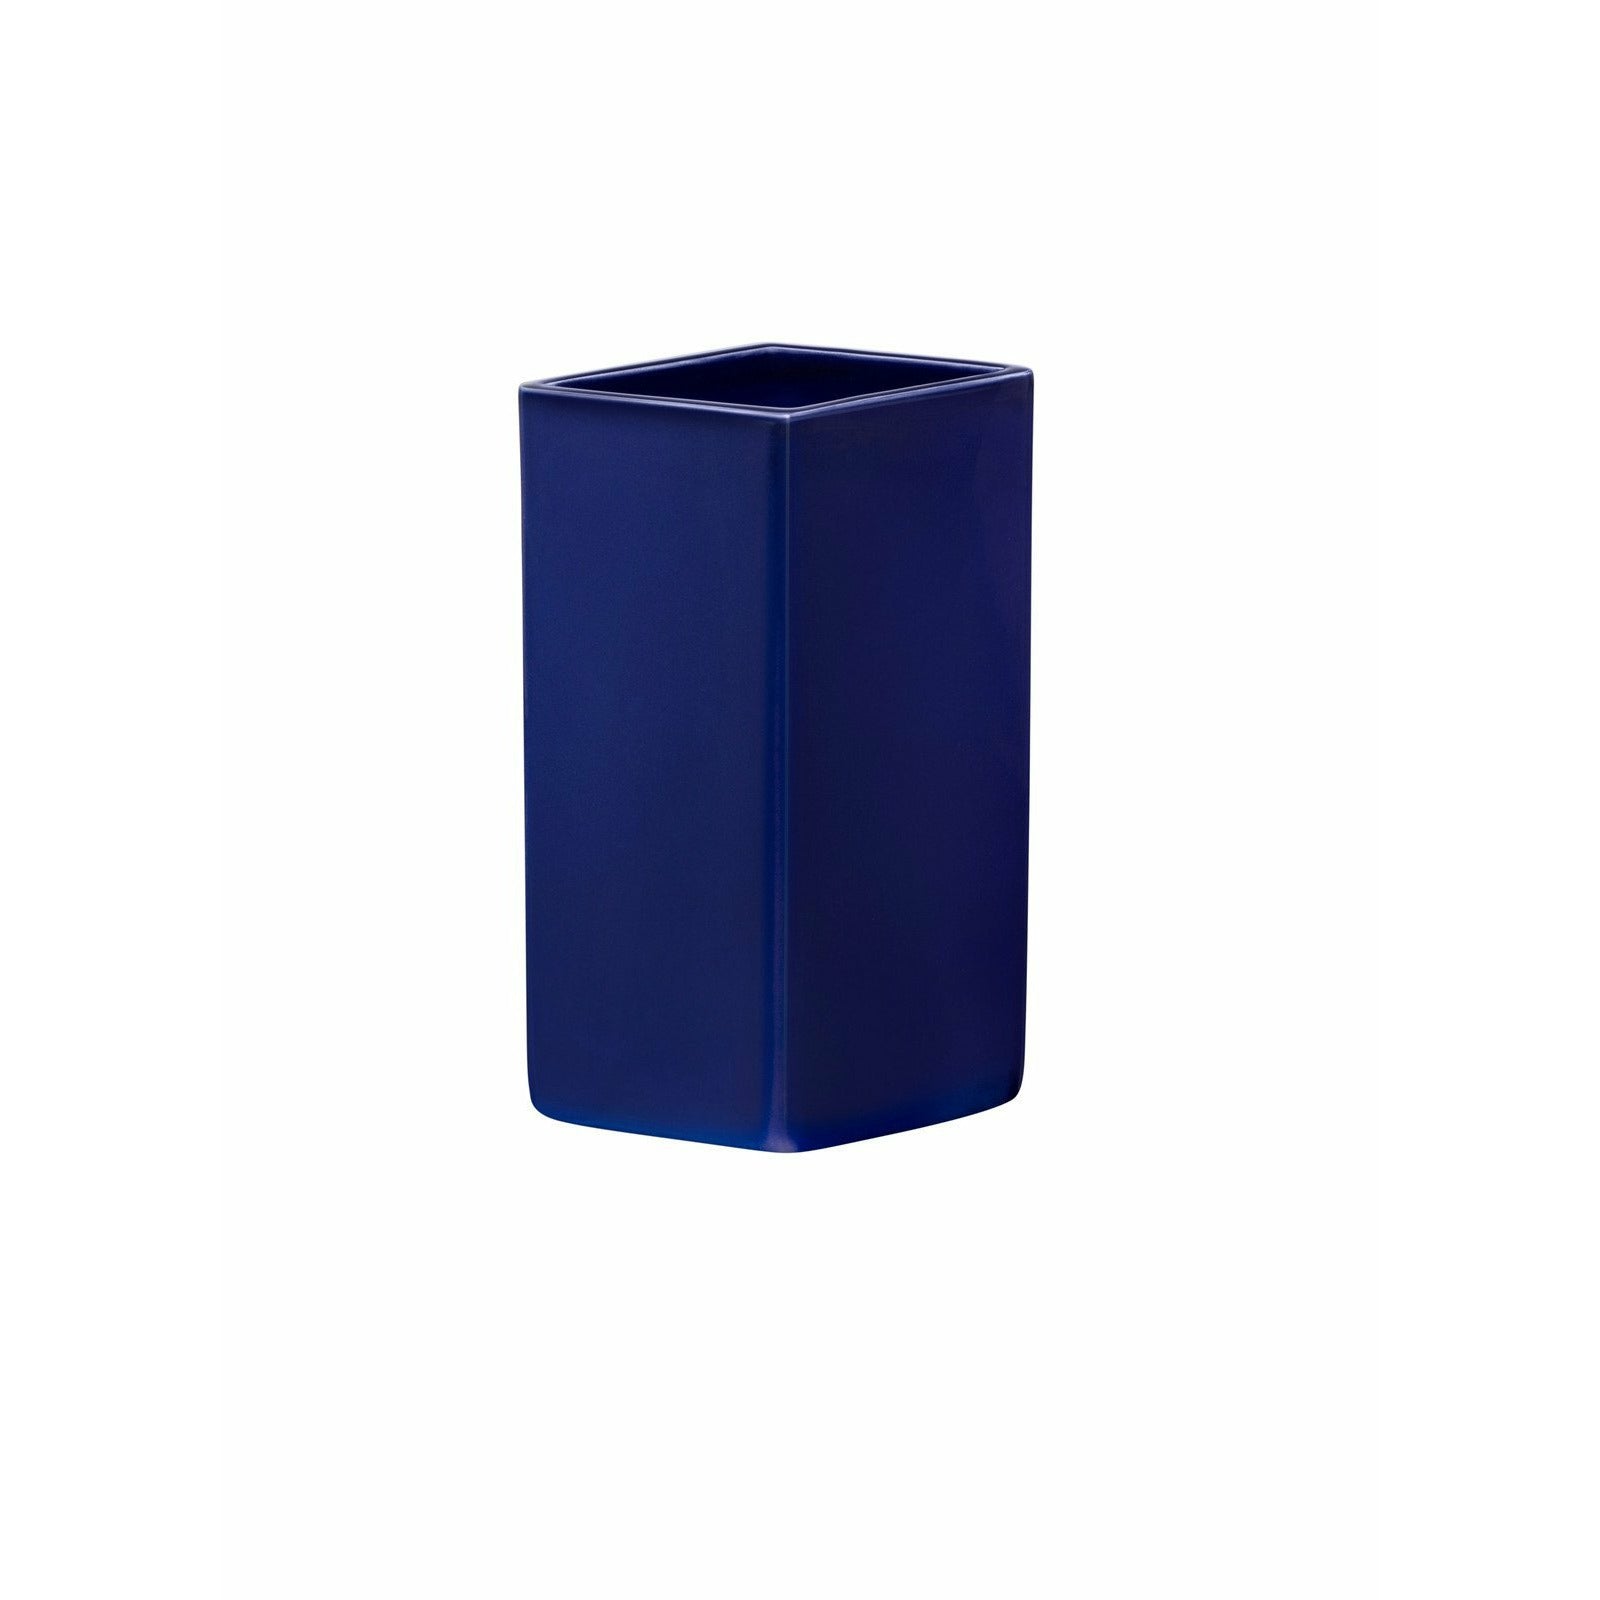 Iittala Ruutu Keramik Vase dunkelblau, 18 cm